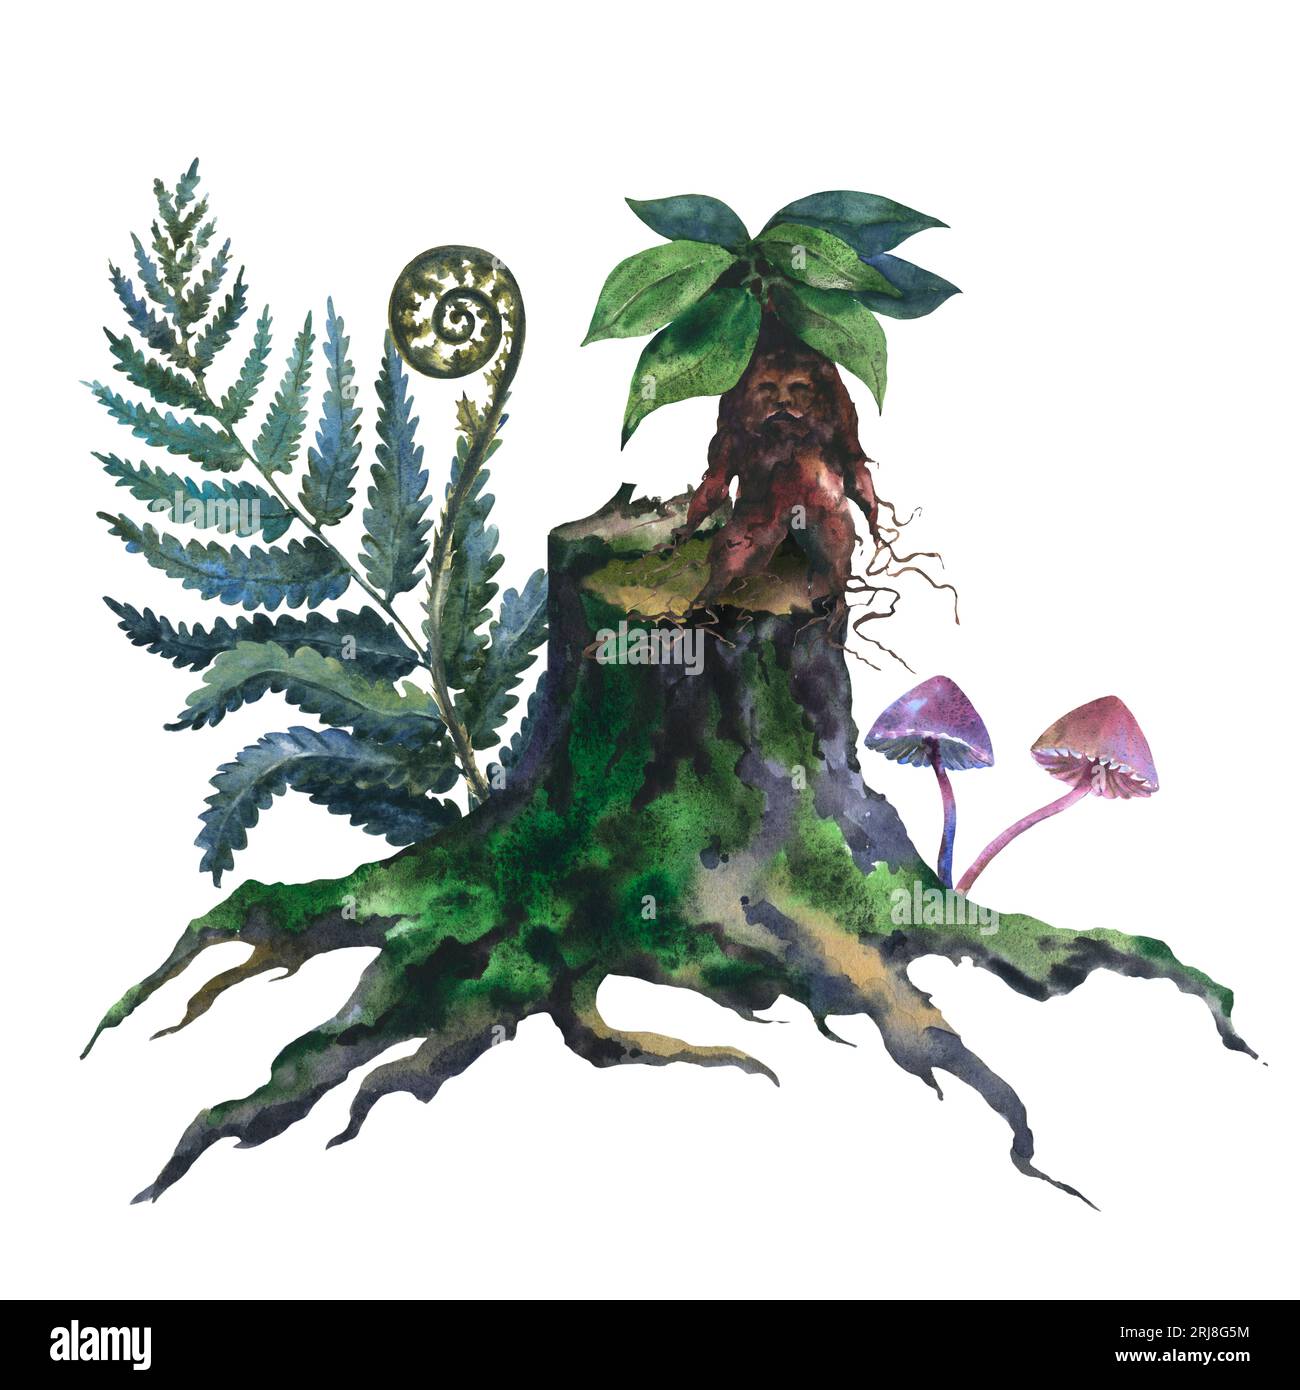 Aquarellbild eines alten Stumpfes, Baumstamm mit grünem Moos-, Farn- und Mandragora-Plan, handbemalt in Aquarellfarben auf weißem Hintergrund. Stockfoto